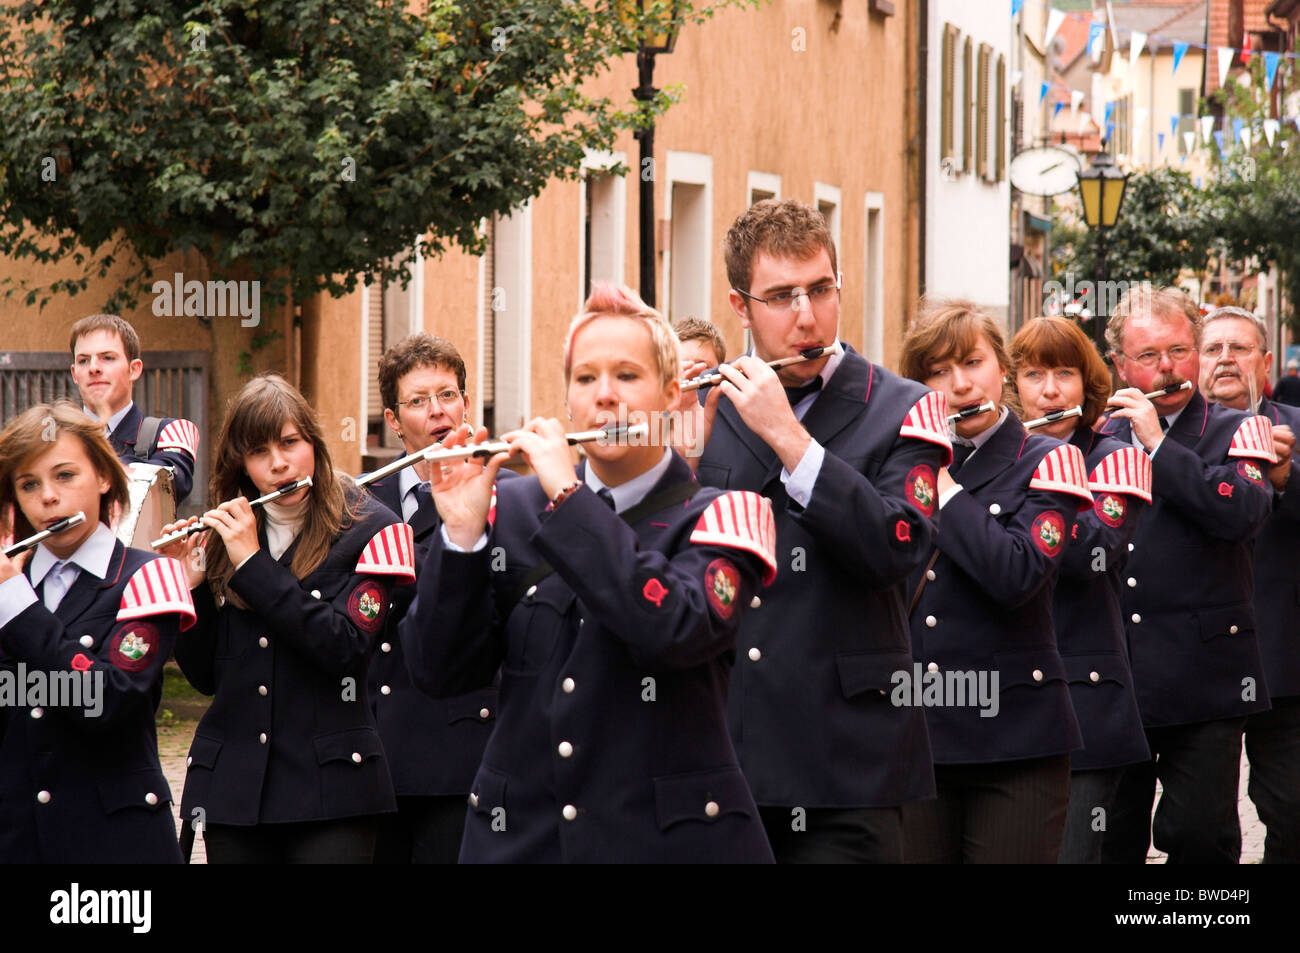 Musiciens en uniforme, street parade, célébrations jubilaires, Eberbach, Allemagne Banque D'Images